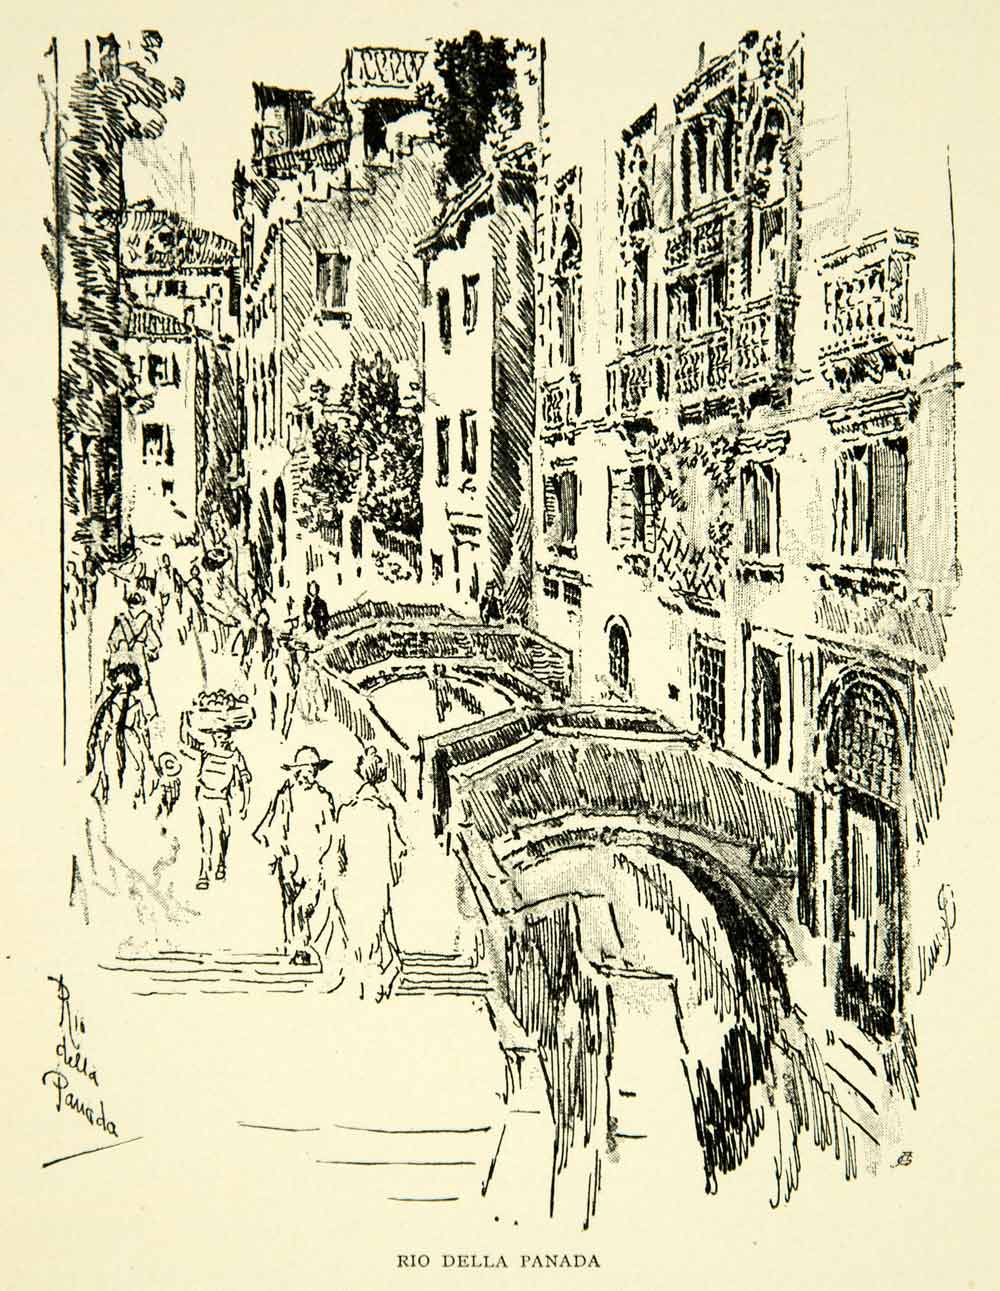 1905 Print Rio Della Panada Venice Canal Bridge Joseph Pennell Art XEJA6